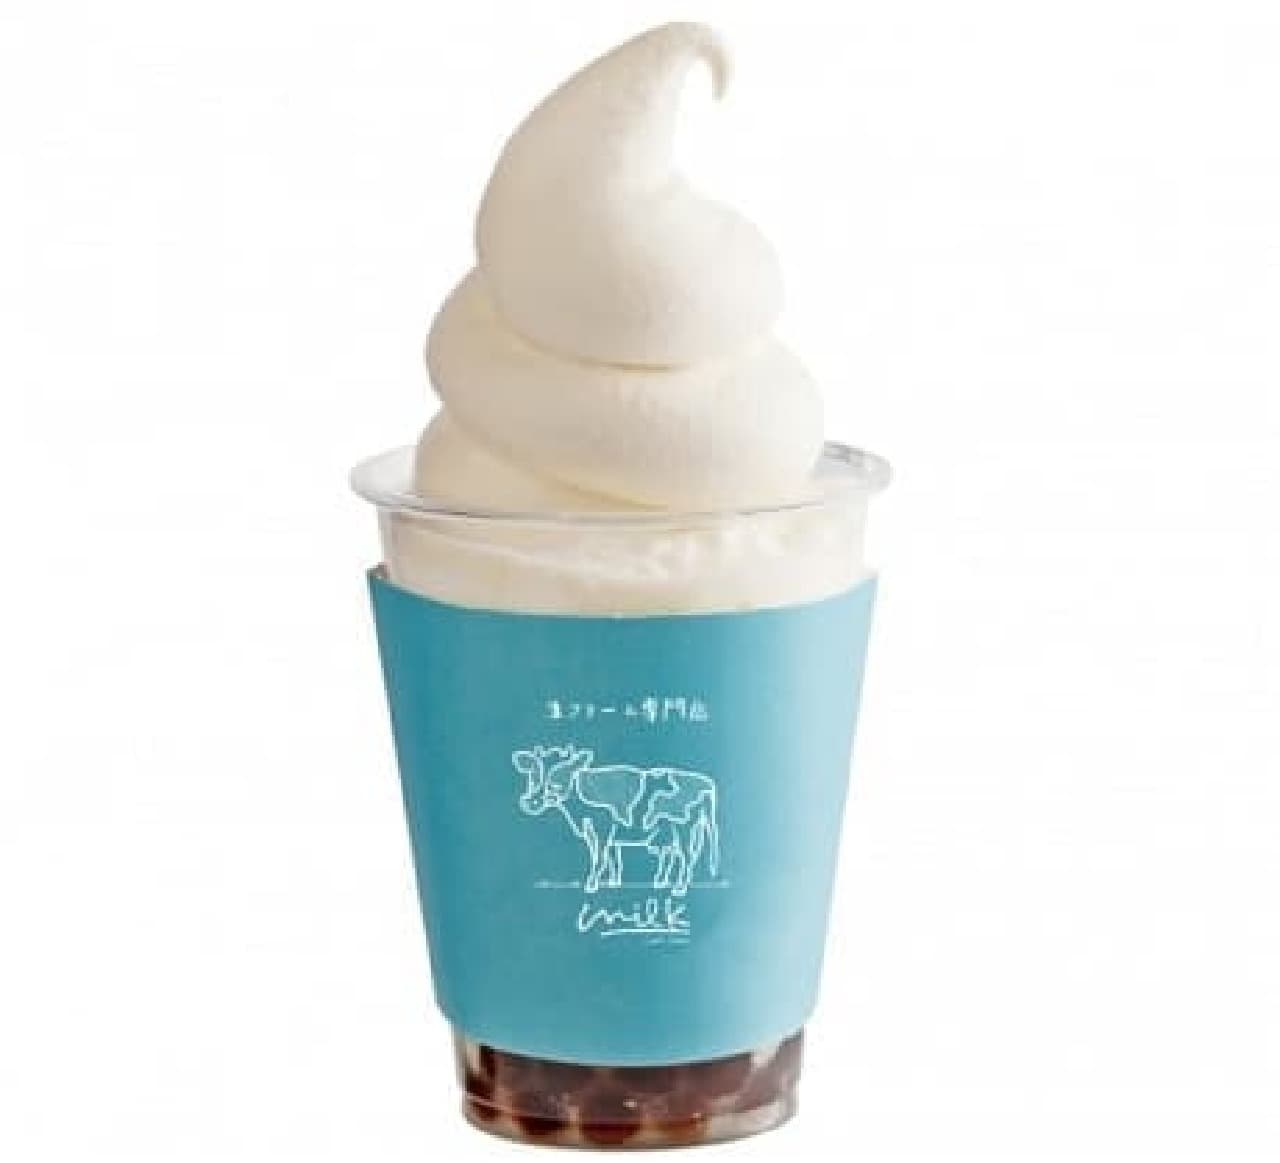 生クリーム専門店 ミルク が立川にオープン 最高濃度の生クリーム 入りシュークリームを先行販売 えん食べ